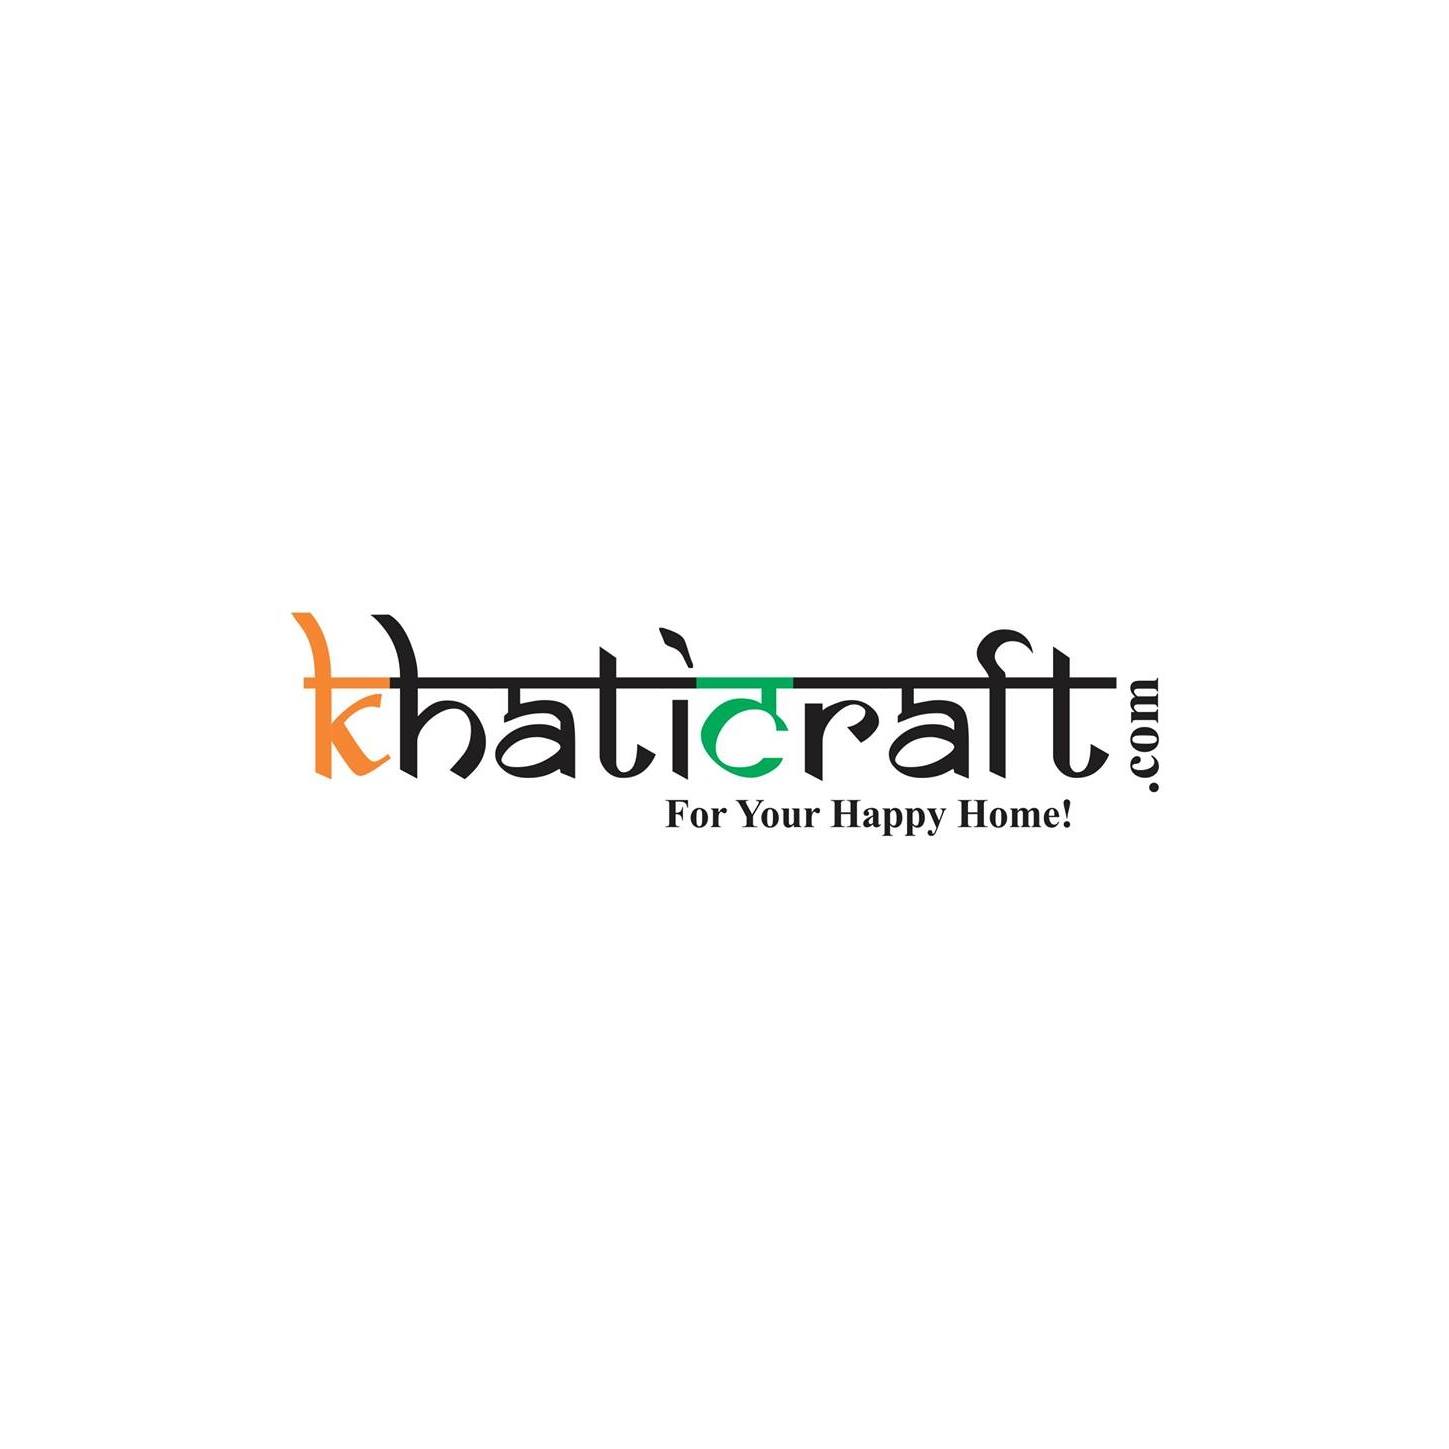 KHATICRAFT.com